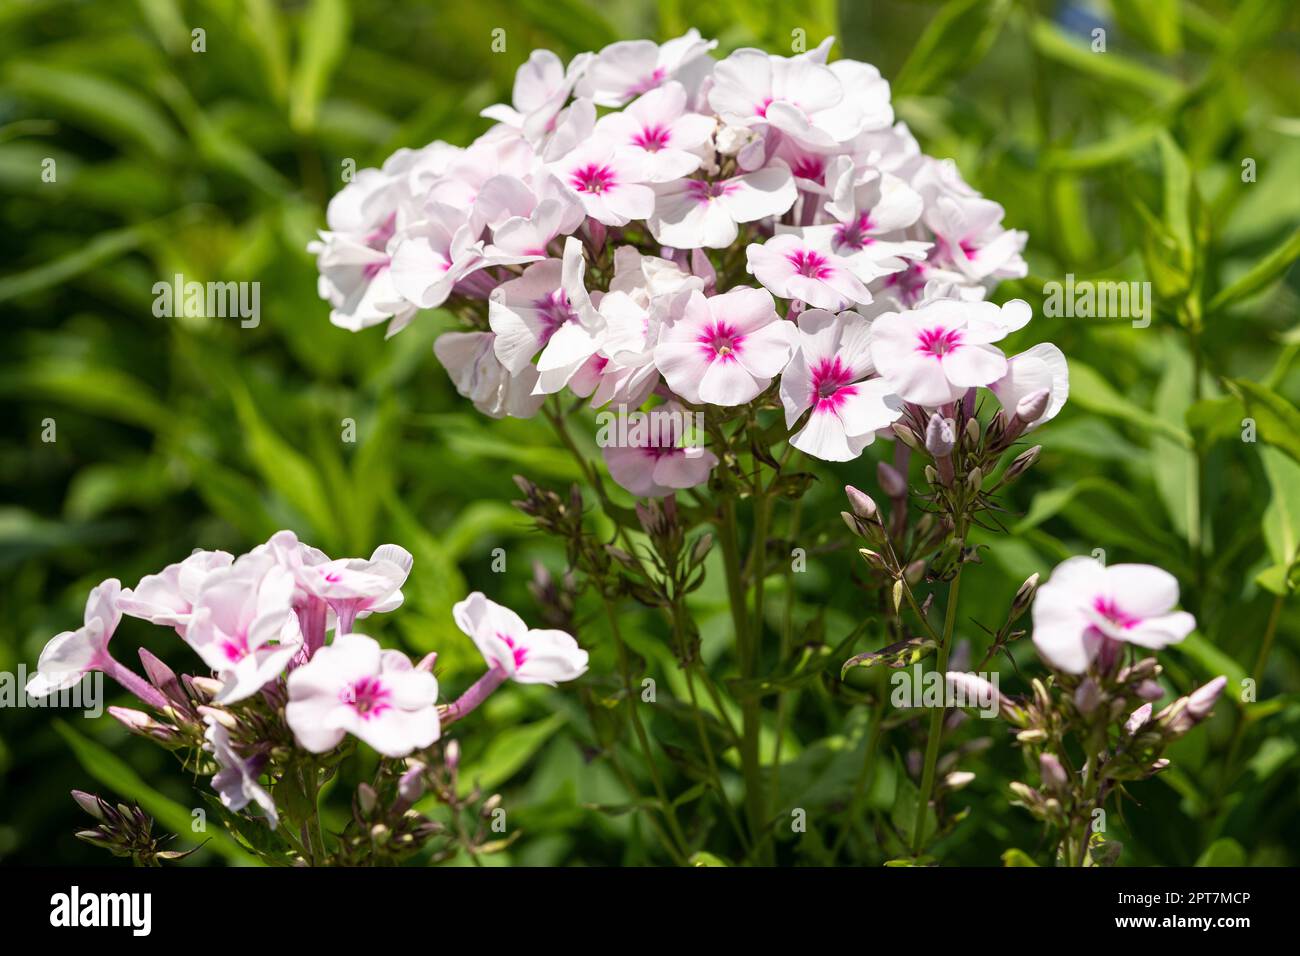 Garden Phlox (Phlox paniculata), flowers of summer Stock Photo